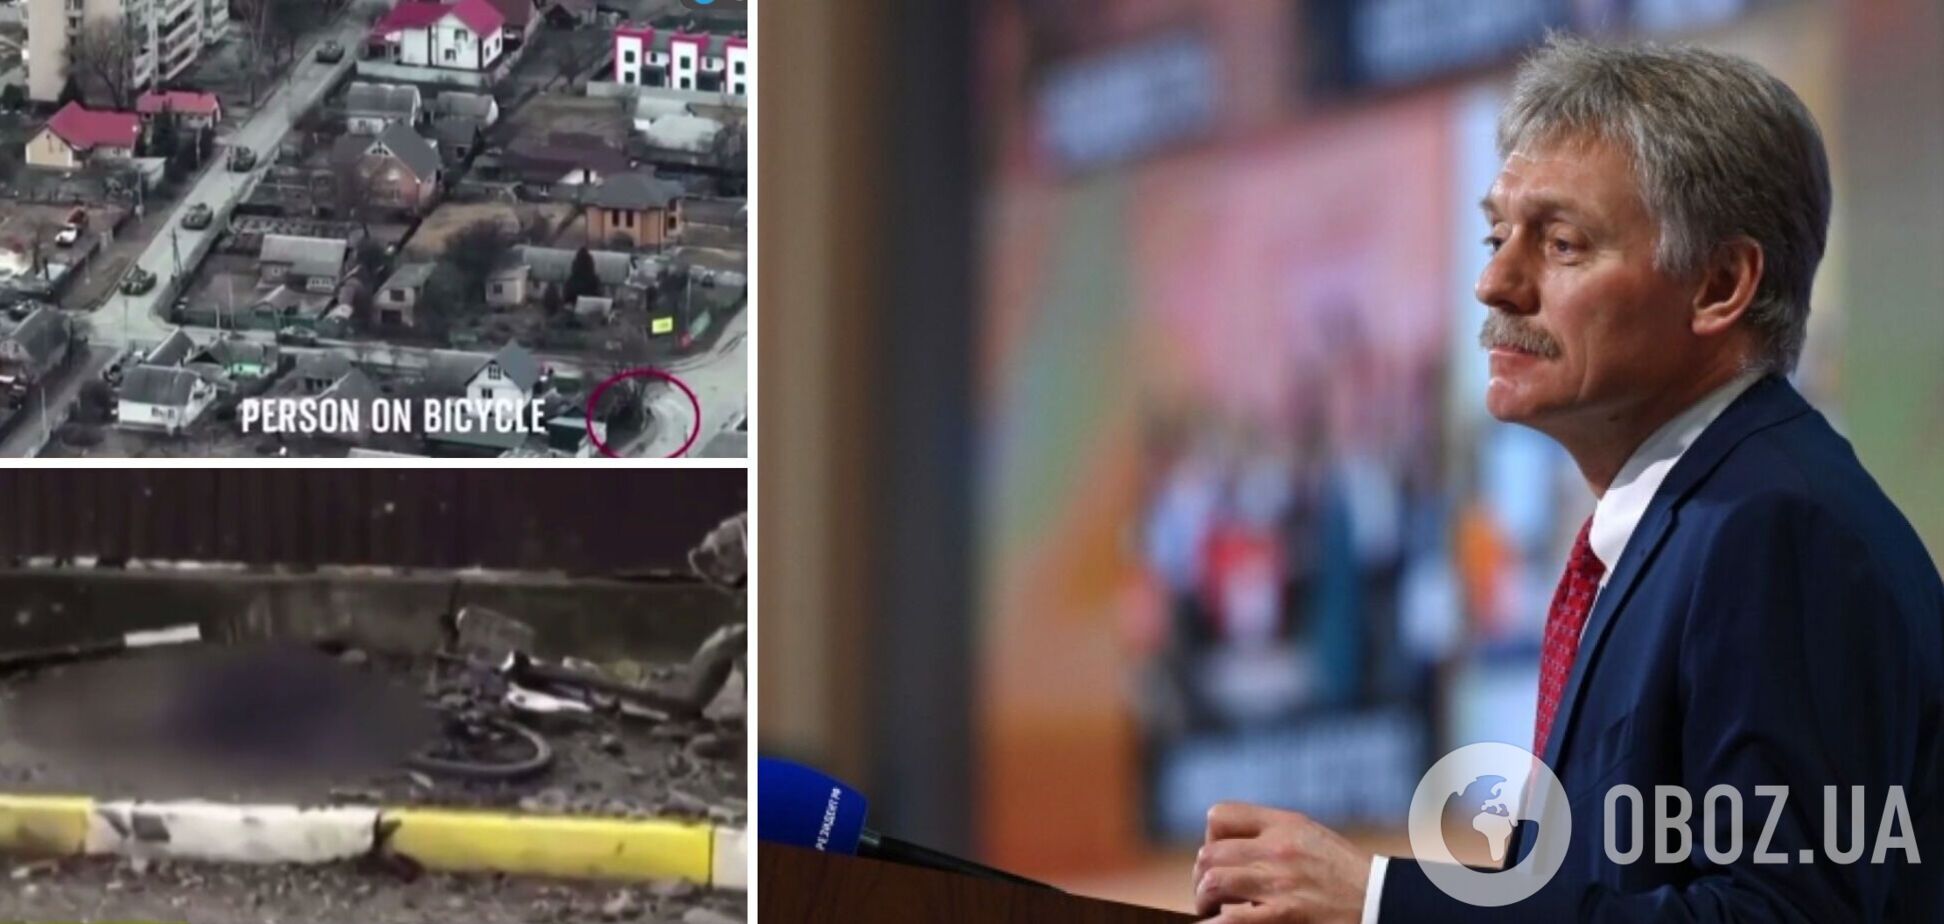 Ведучий SkyNews у відповідь на брехню Пєскова про Бучу показав відео, як окупанти розстріляли жінку на велосипеді